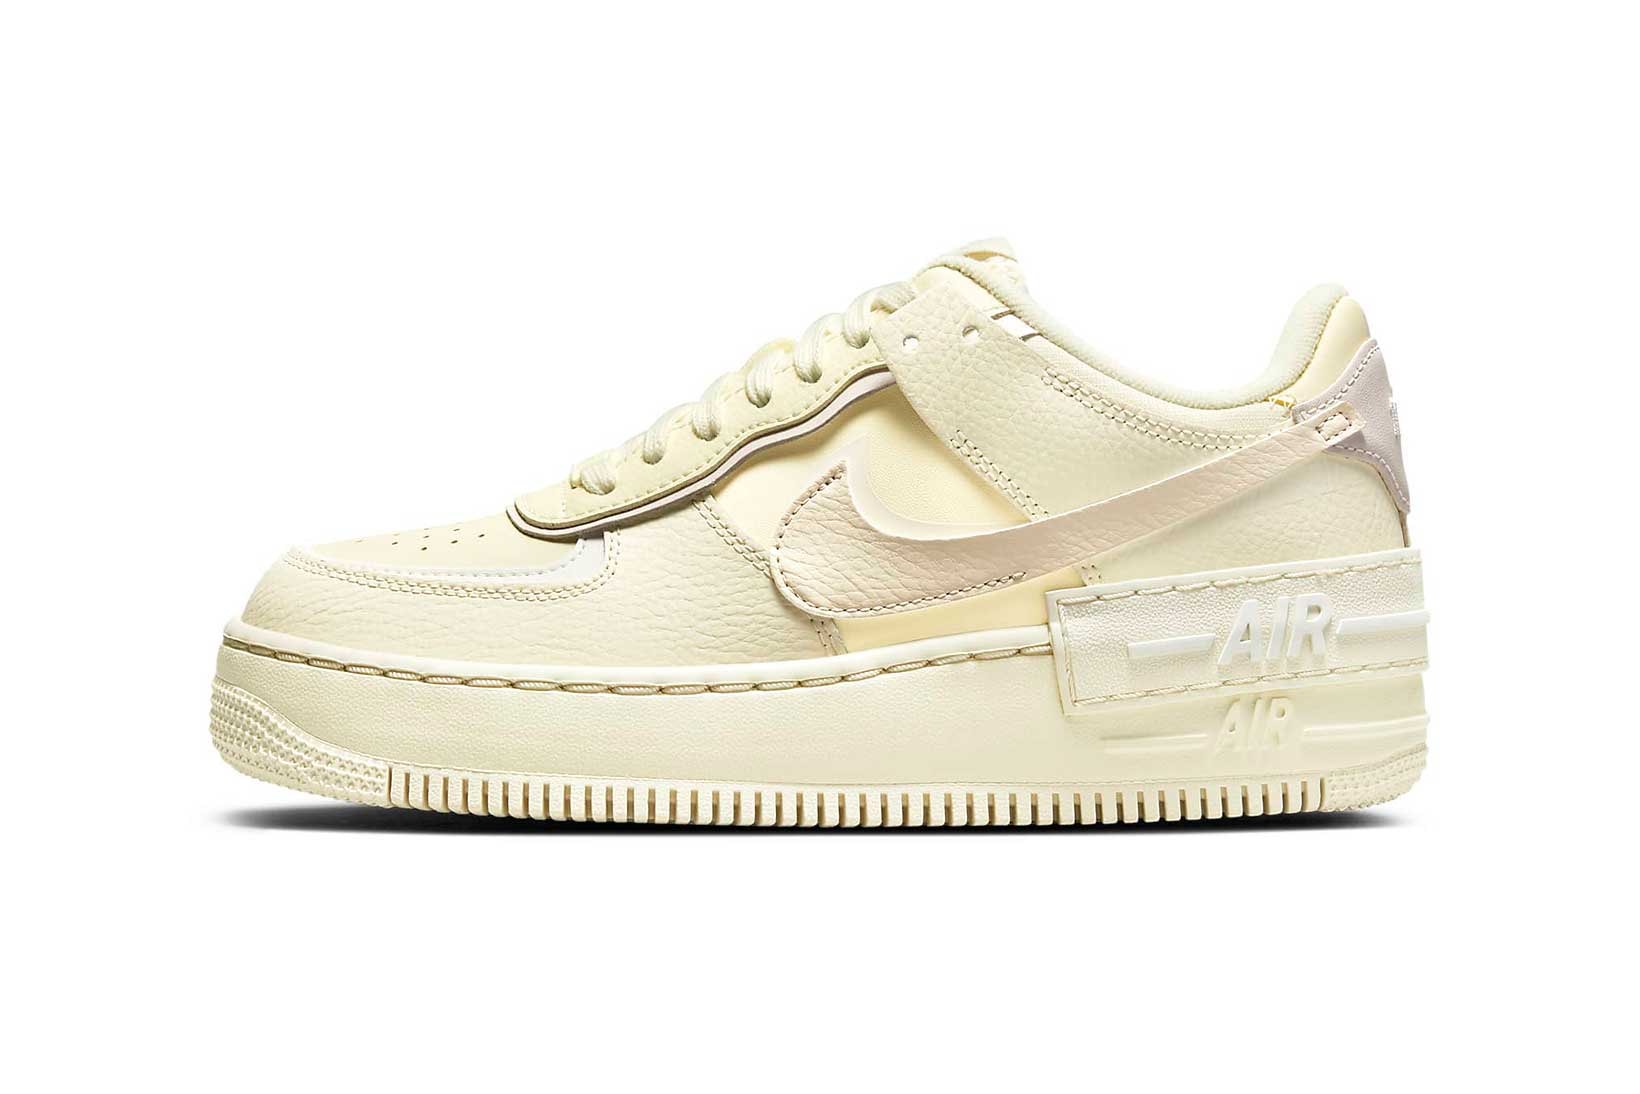 nike air force 1 af1 shadow womens sneakers coconut milk cream white colorway footwear shoes kicks sneakerhead